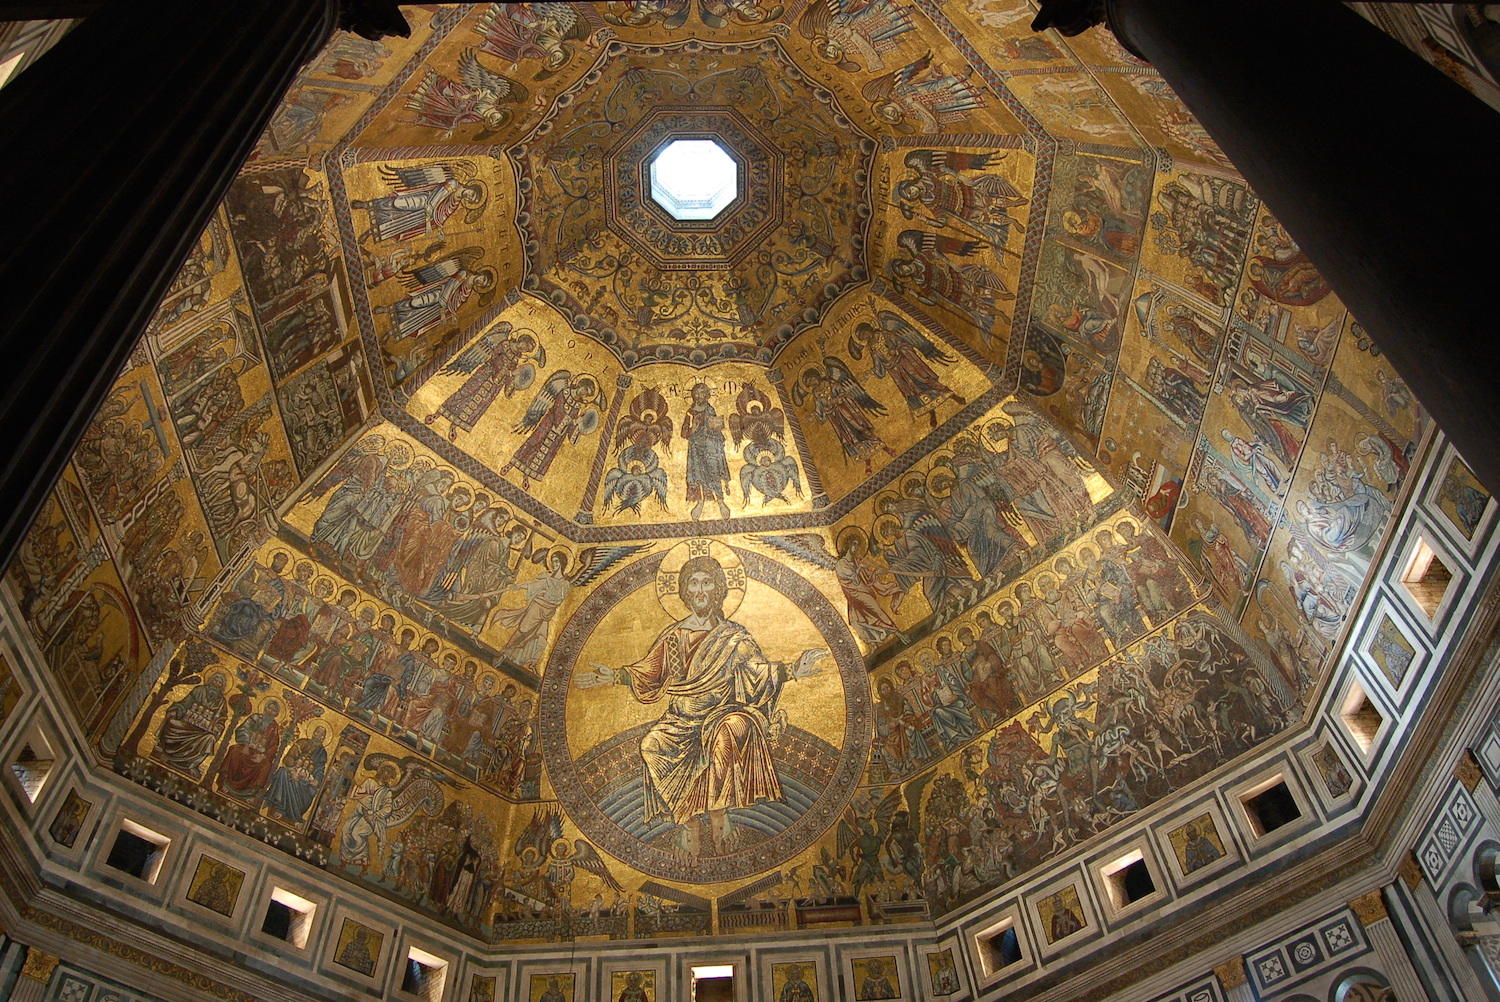 Ciclo musivo della cupola del Battistero di San Giovanni (Firenze) XIII-XIV° secolo d.C.